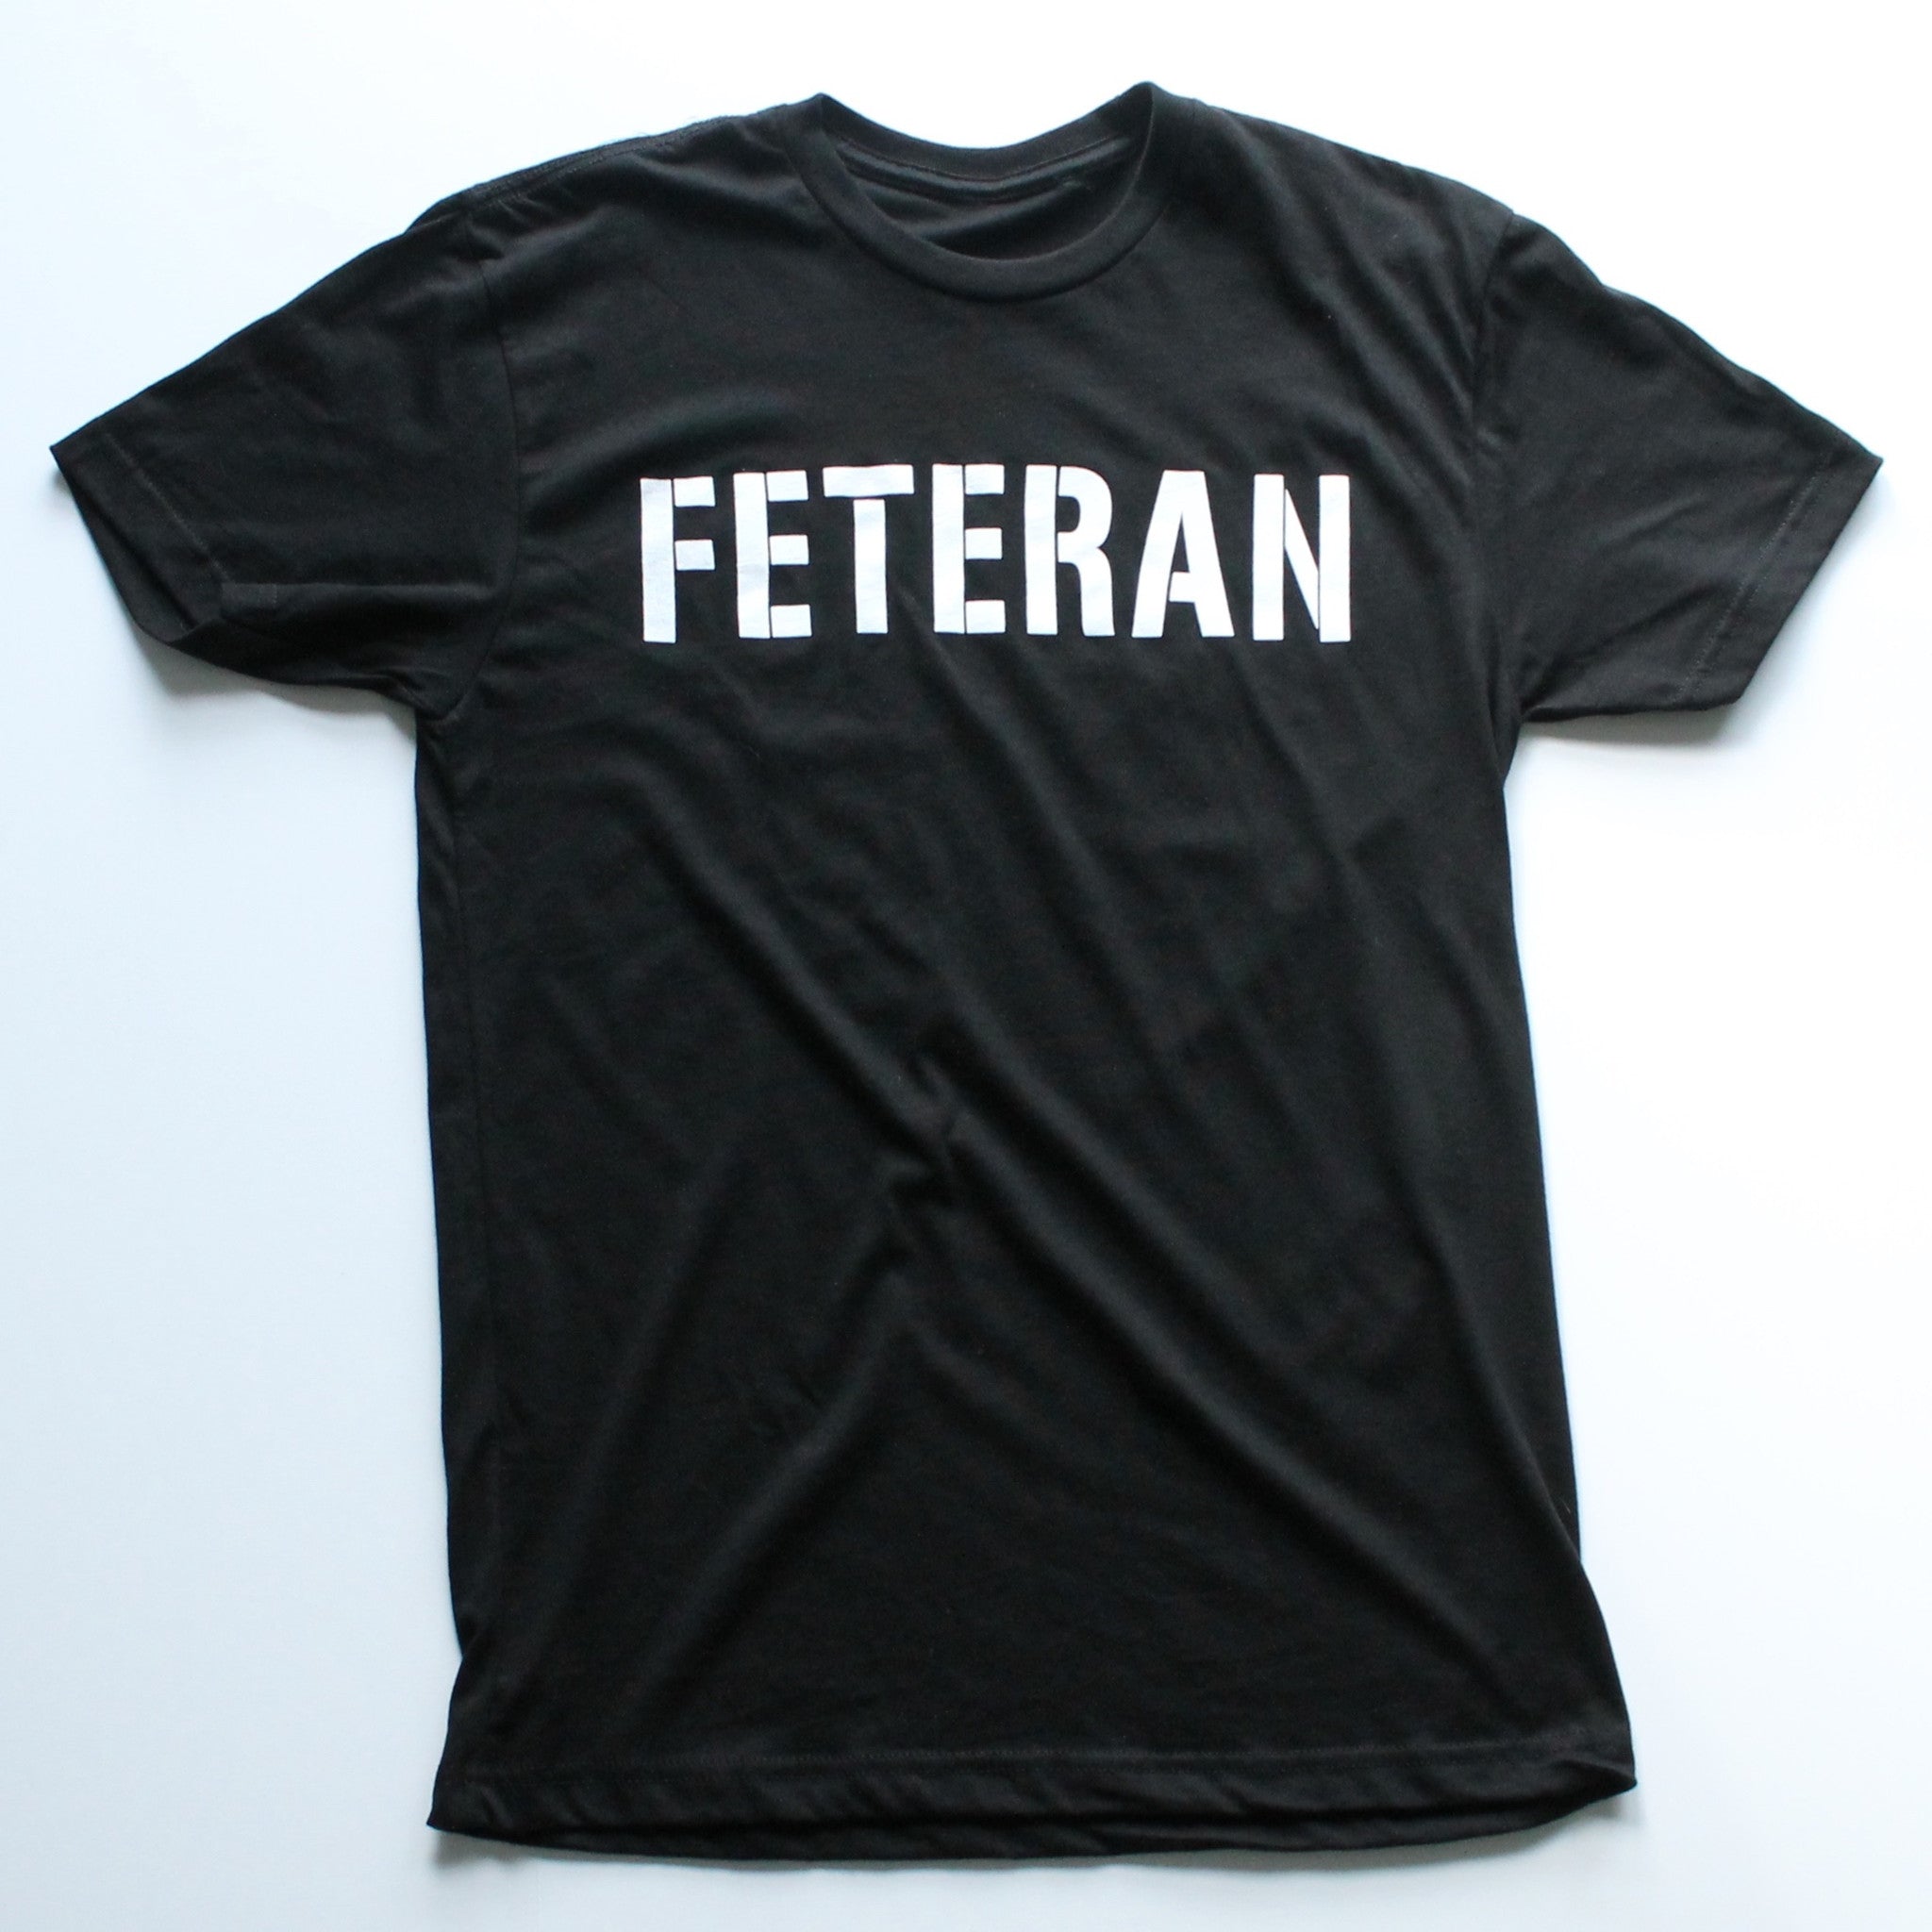 Feteran T-shirt